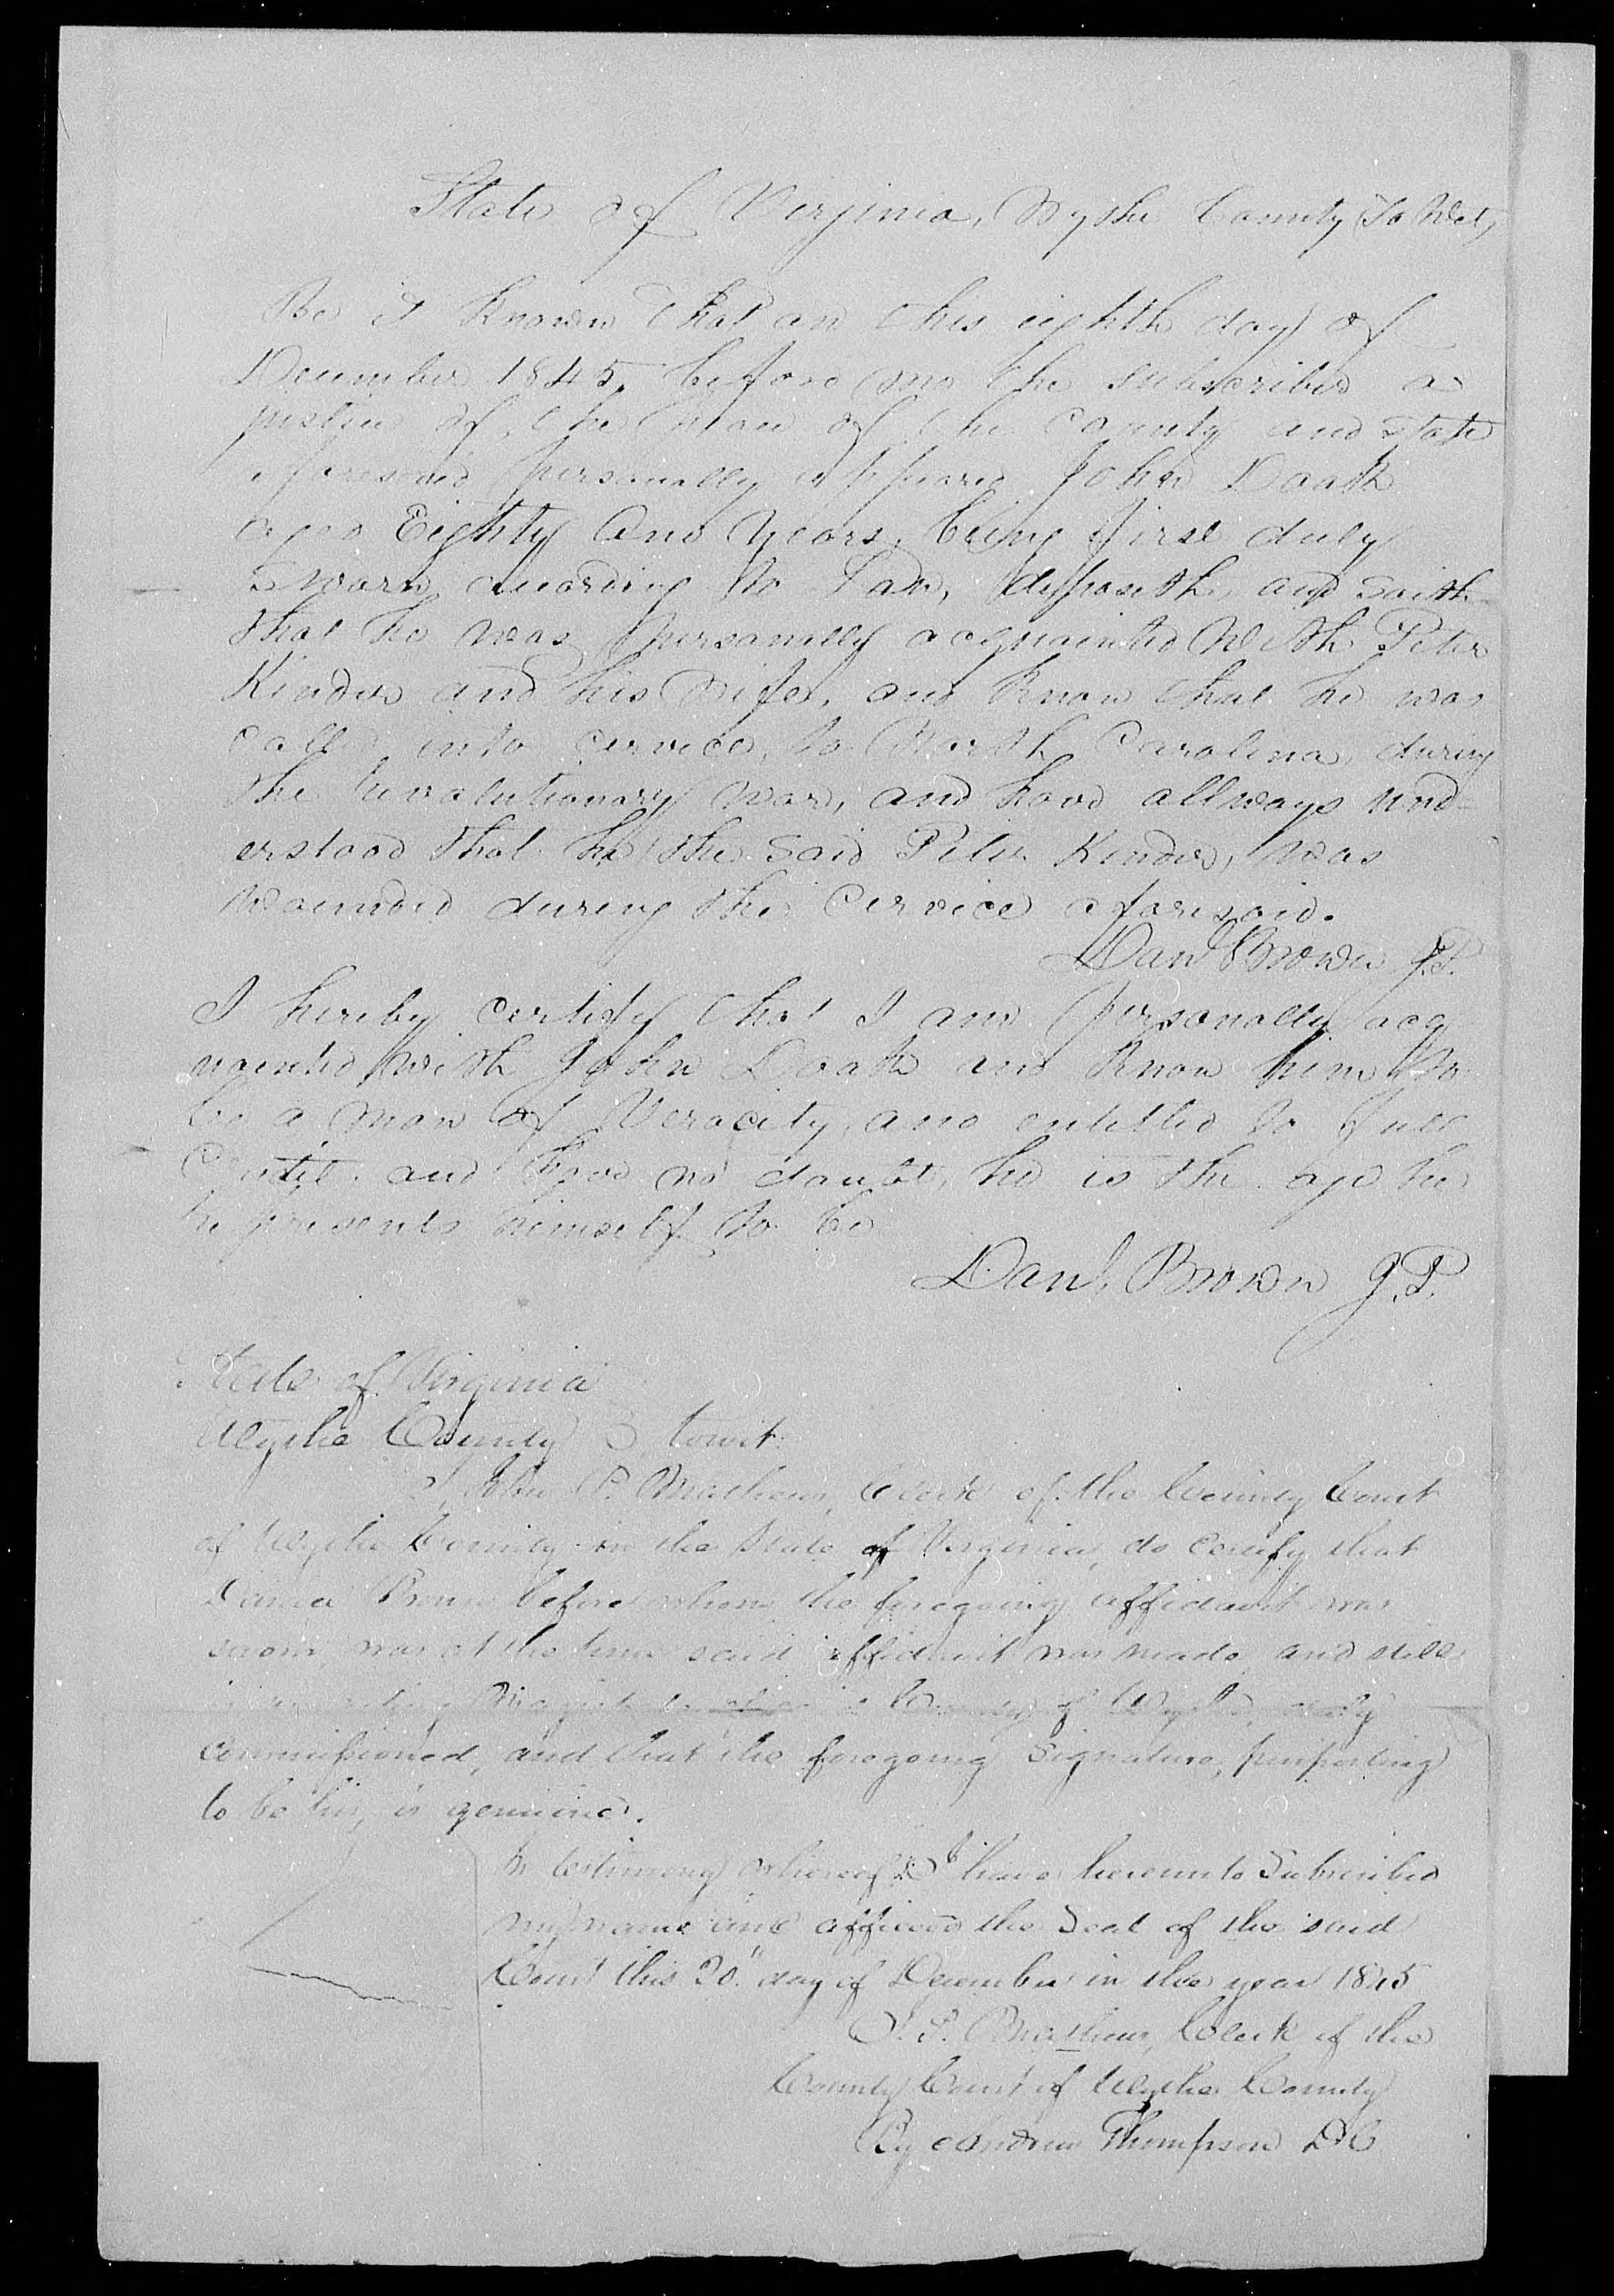 Affidavit of John Doak in support of a Pension Claim for Peter and Margaret Kinder, 8 December 1845